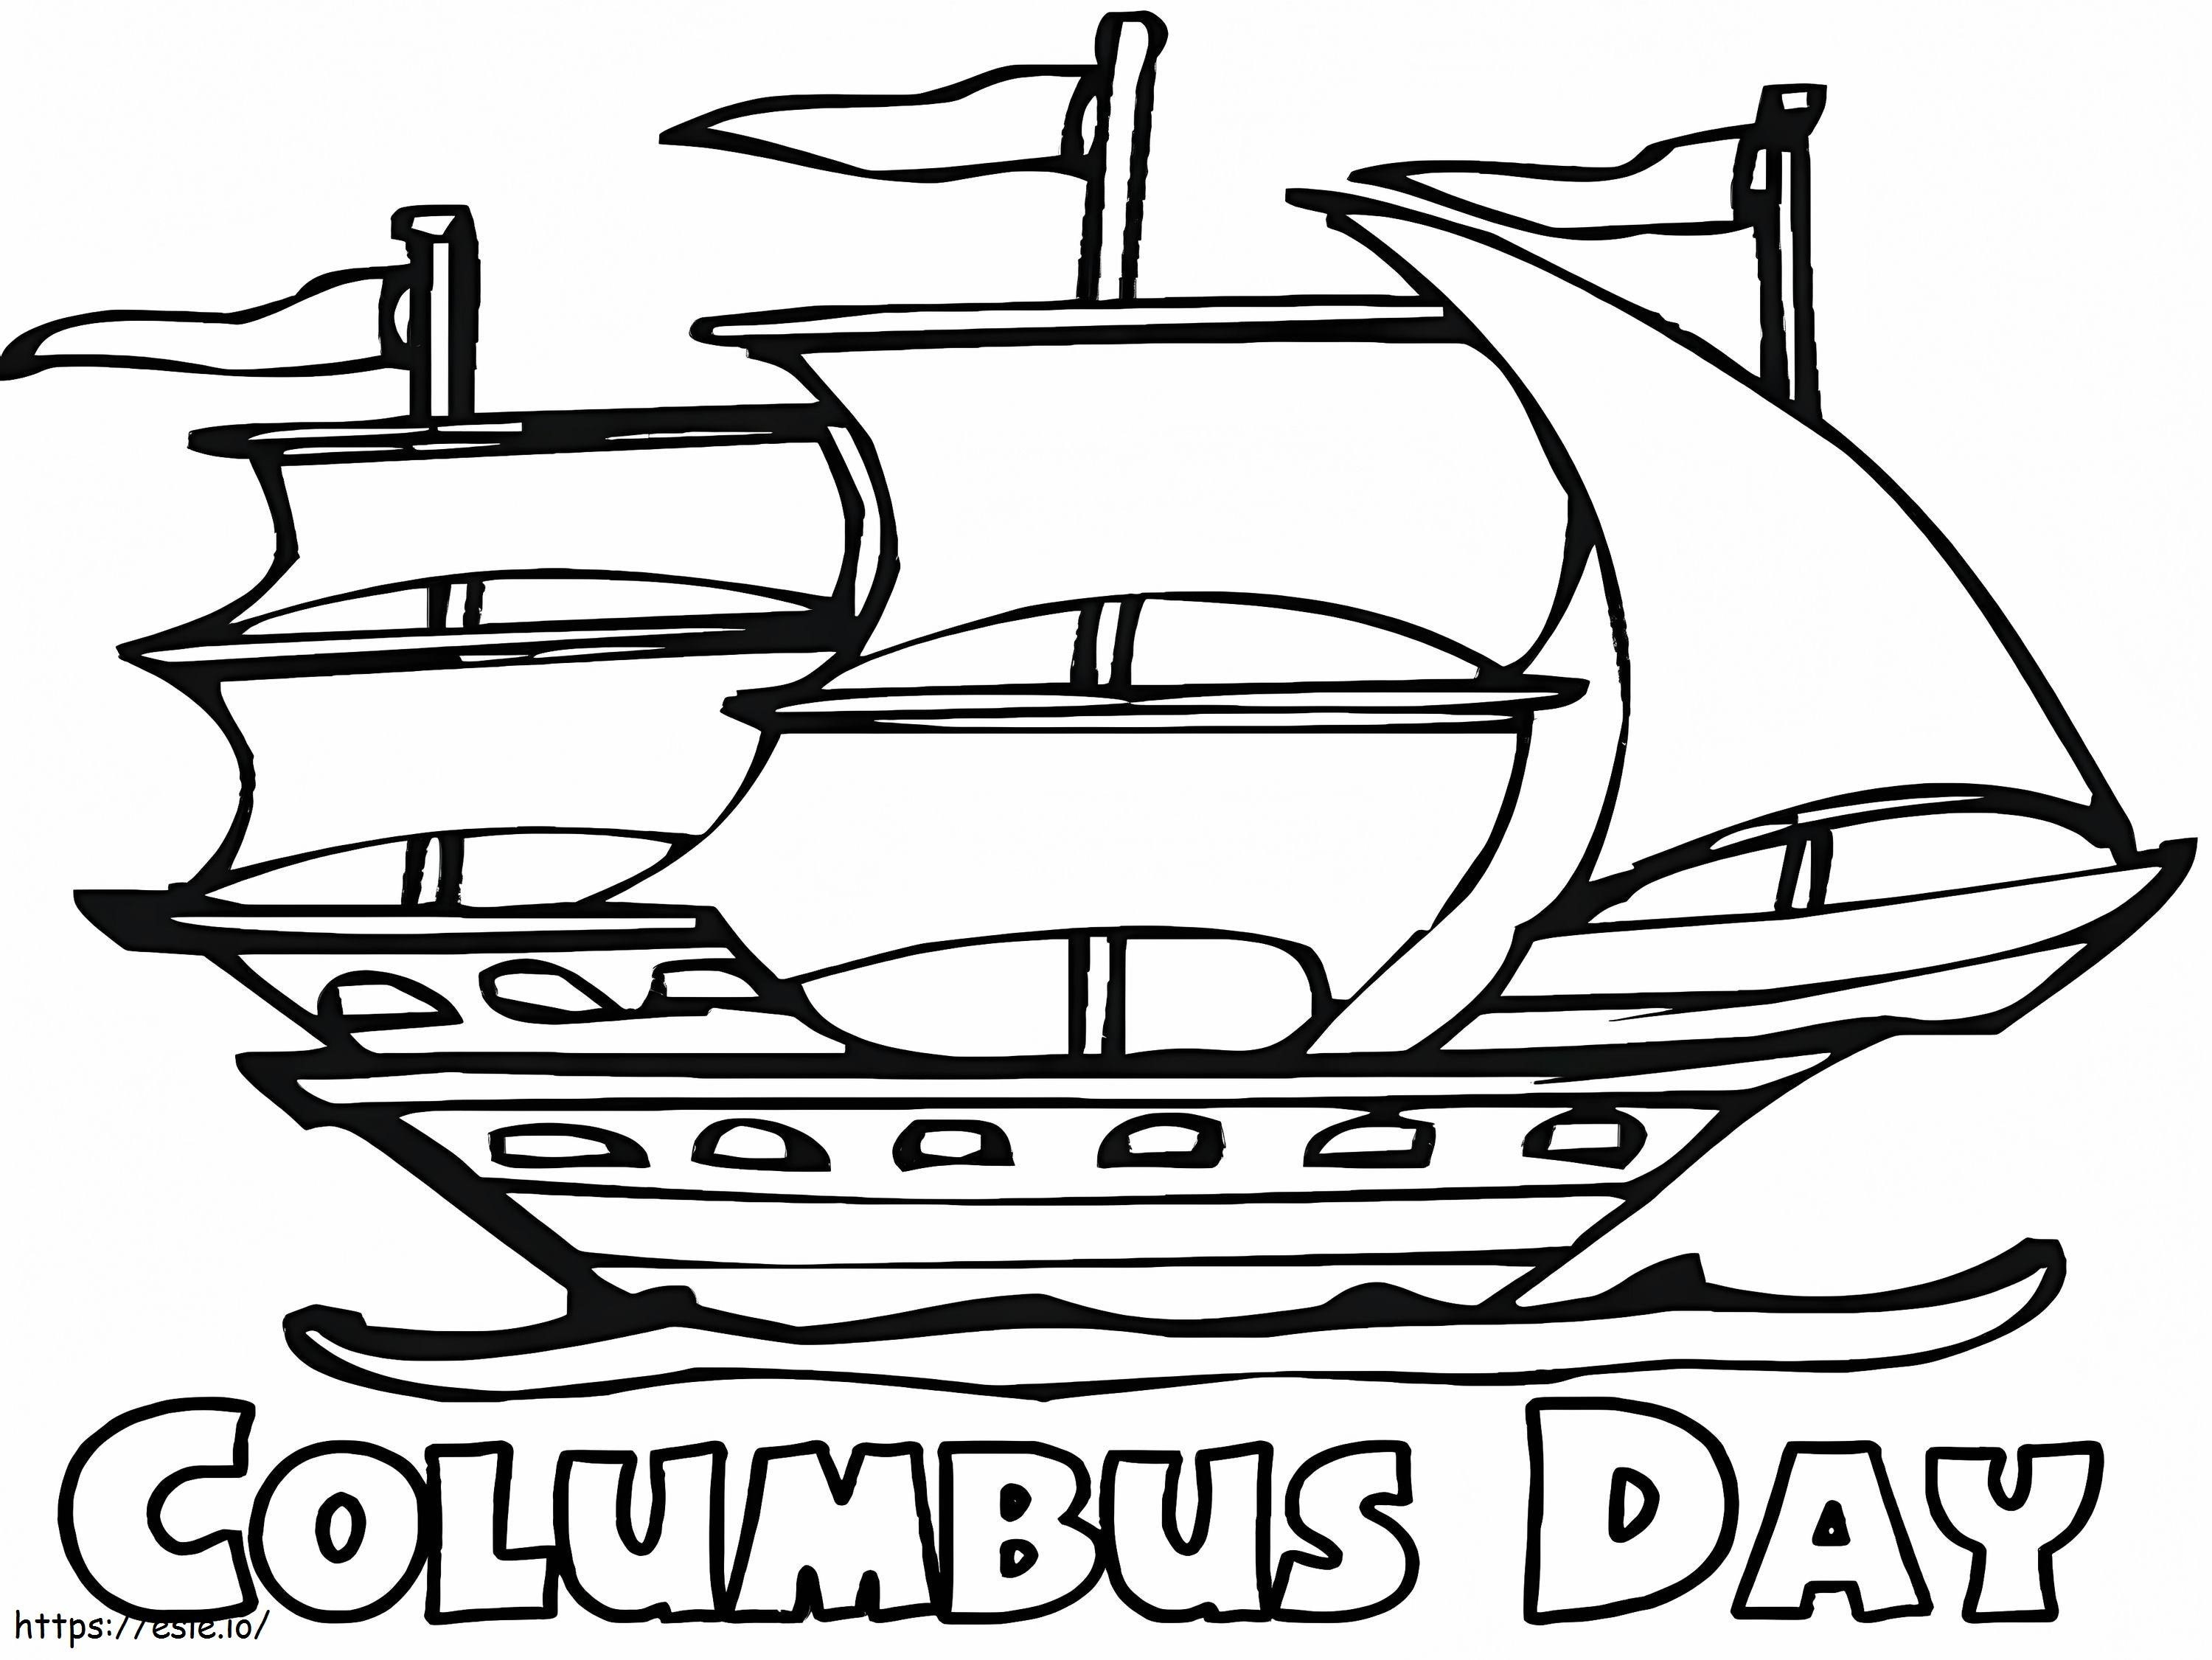 Columbusdag 8 kleurplaat kleurplaat